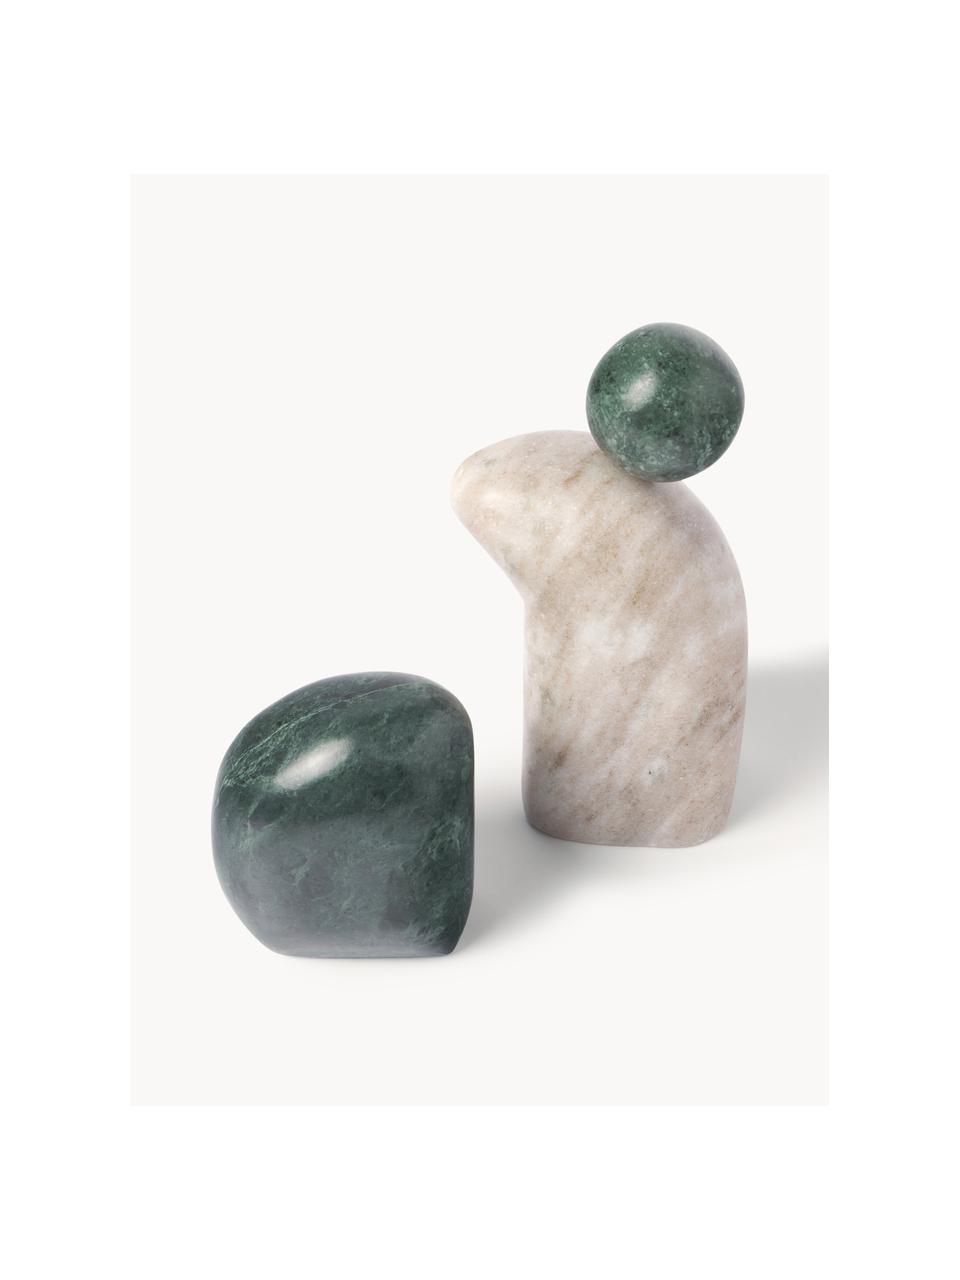 Set di 2 oggetti decorativi in marmo Nati, Marmo, Verde scuro, beige chiaro, marmorizzato, Set in varie misure